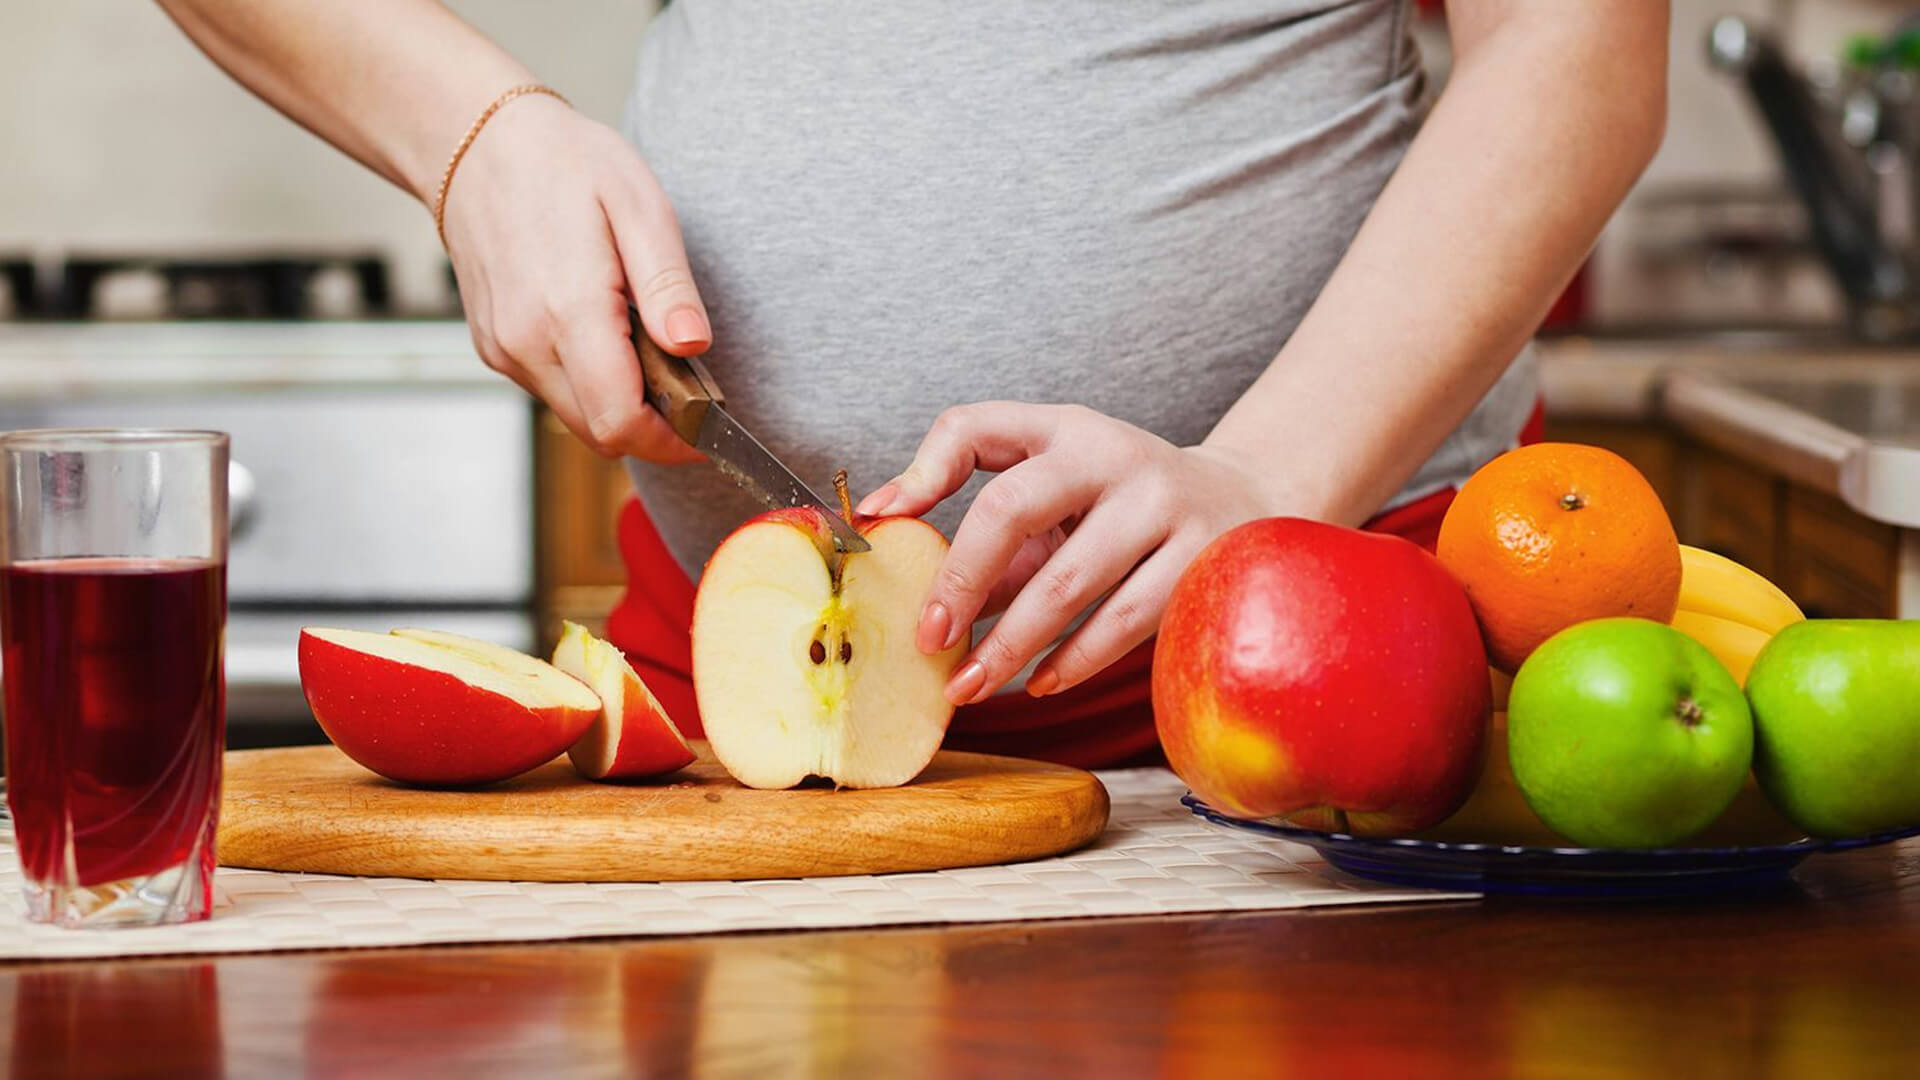 Pregnant woman cutting an apple